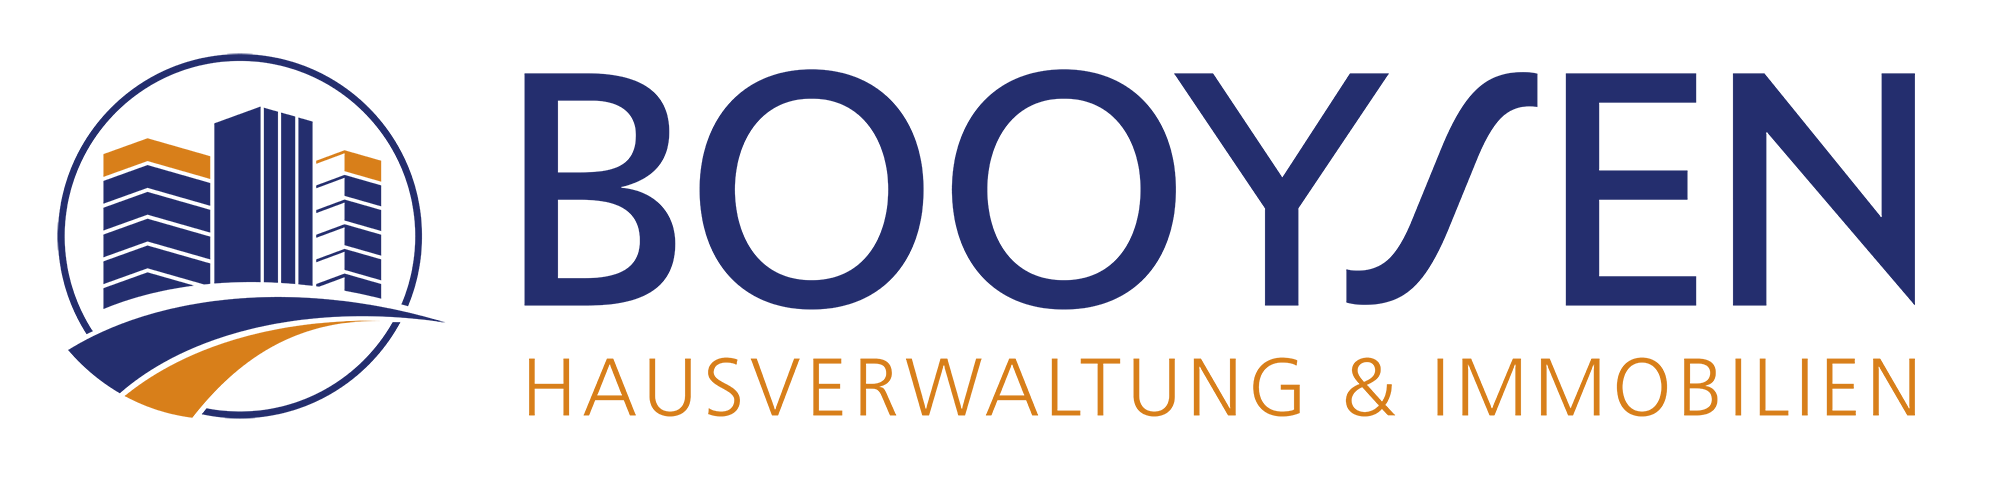 Booysen Hausverwaltung & Immobilien GmbH & Co. KG